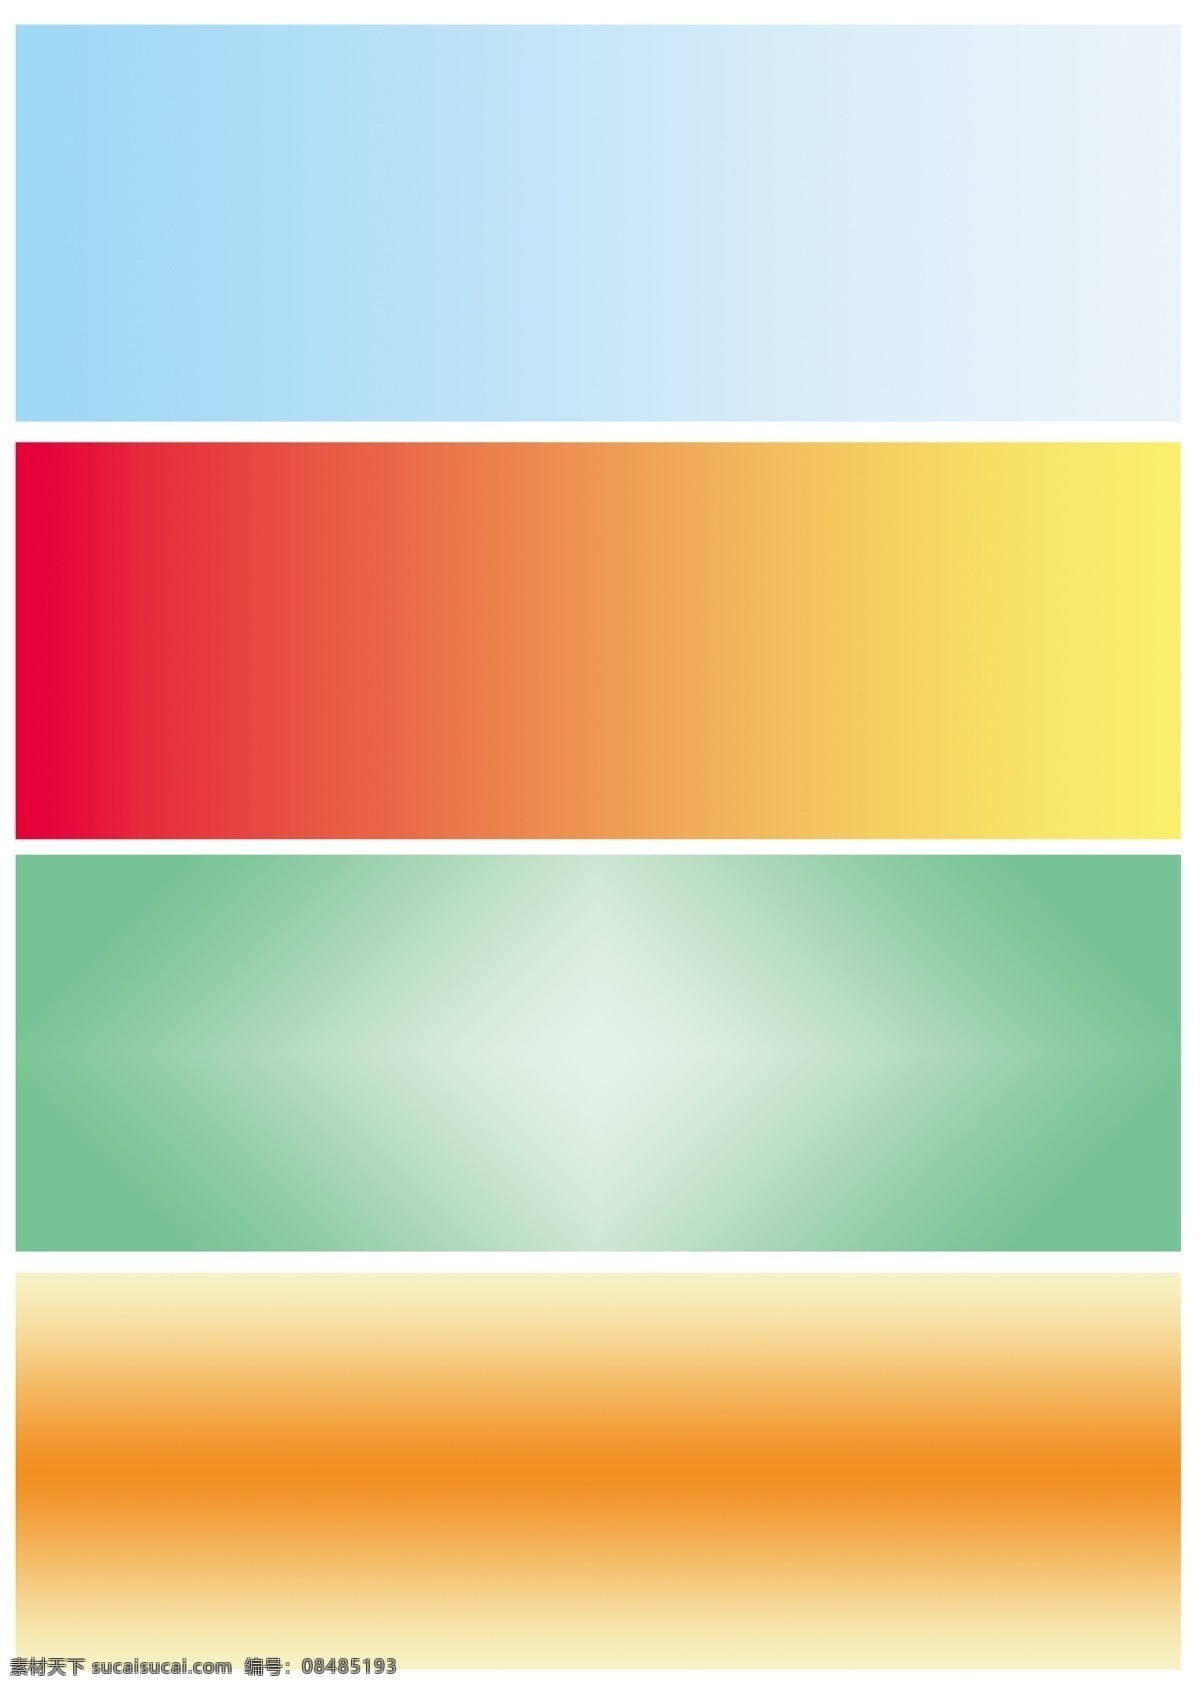 蓝 红 绿 橙 四 款 渐变 300 分辨率 背景素材 自然 颜色 印刷 免费 蓝白 黄绿 白 橙黄 种 套 图 元素 组